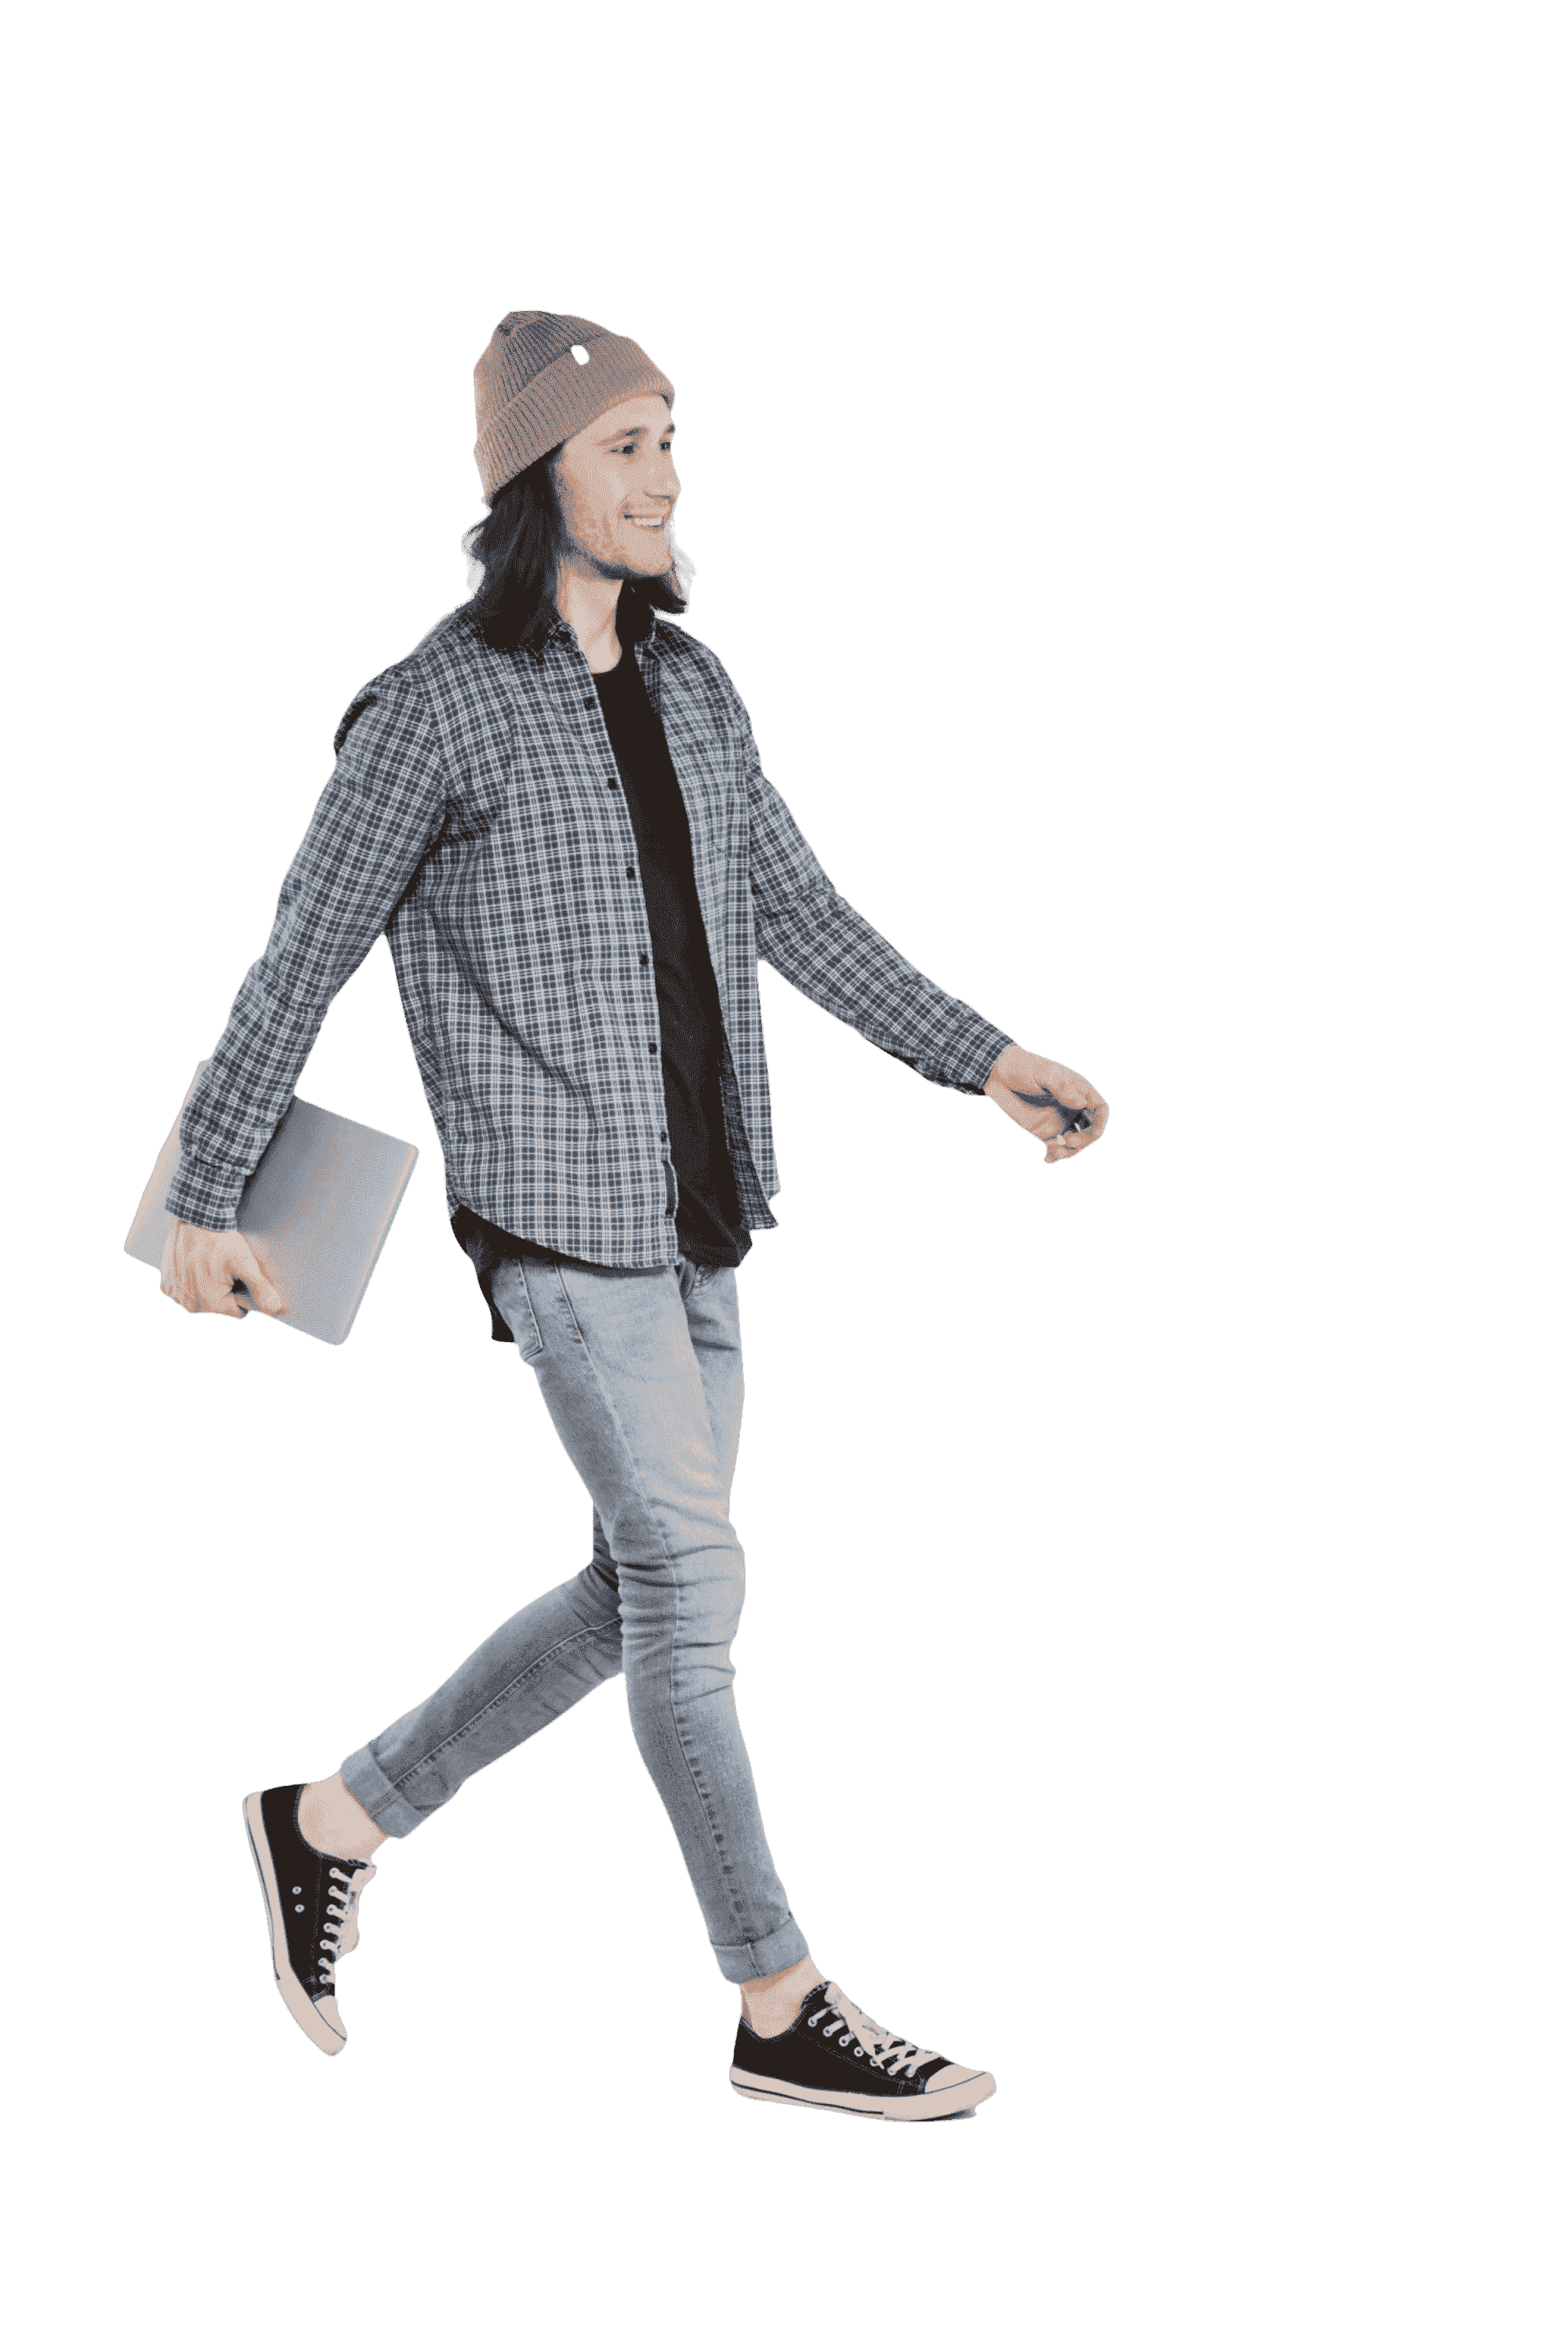 Hipster Walking  Man Transparent Image,,Hipster walking with laptop